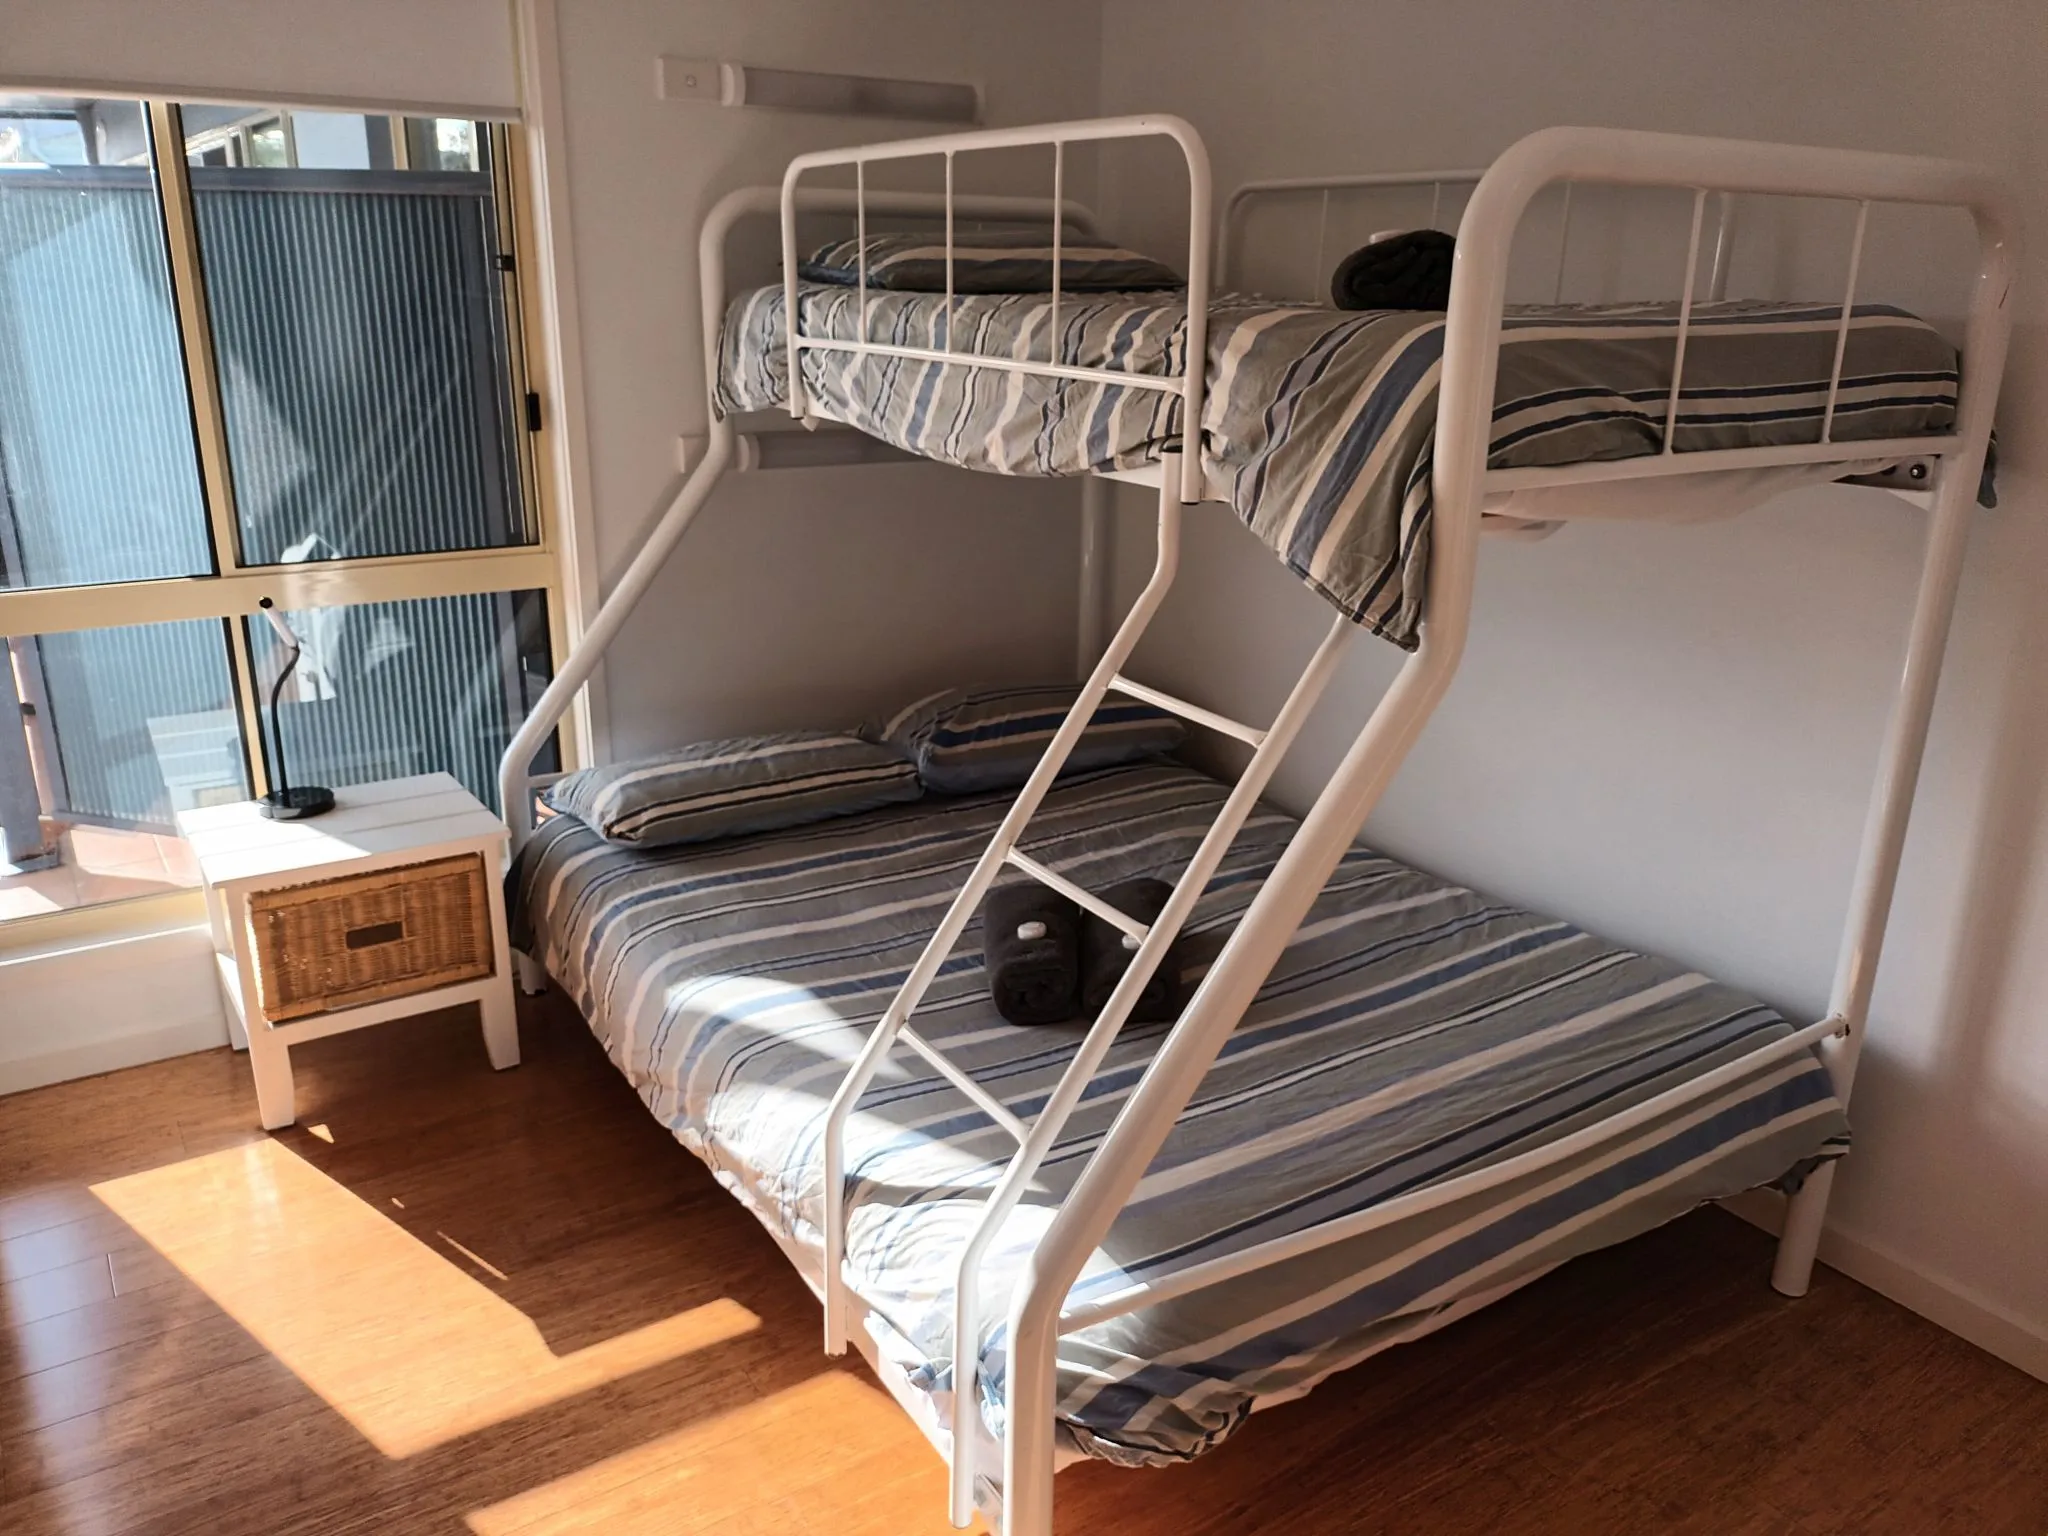 Unit 8 3 bedroom deluxe upstairs bunk